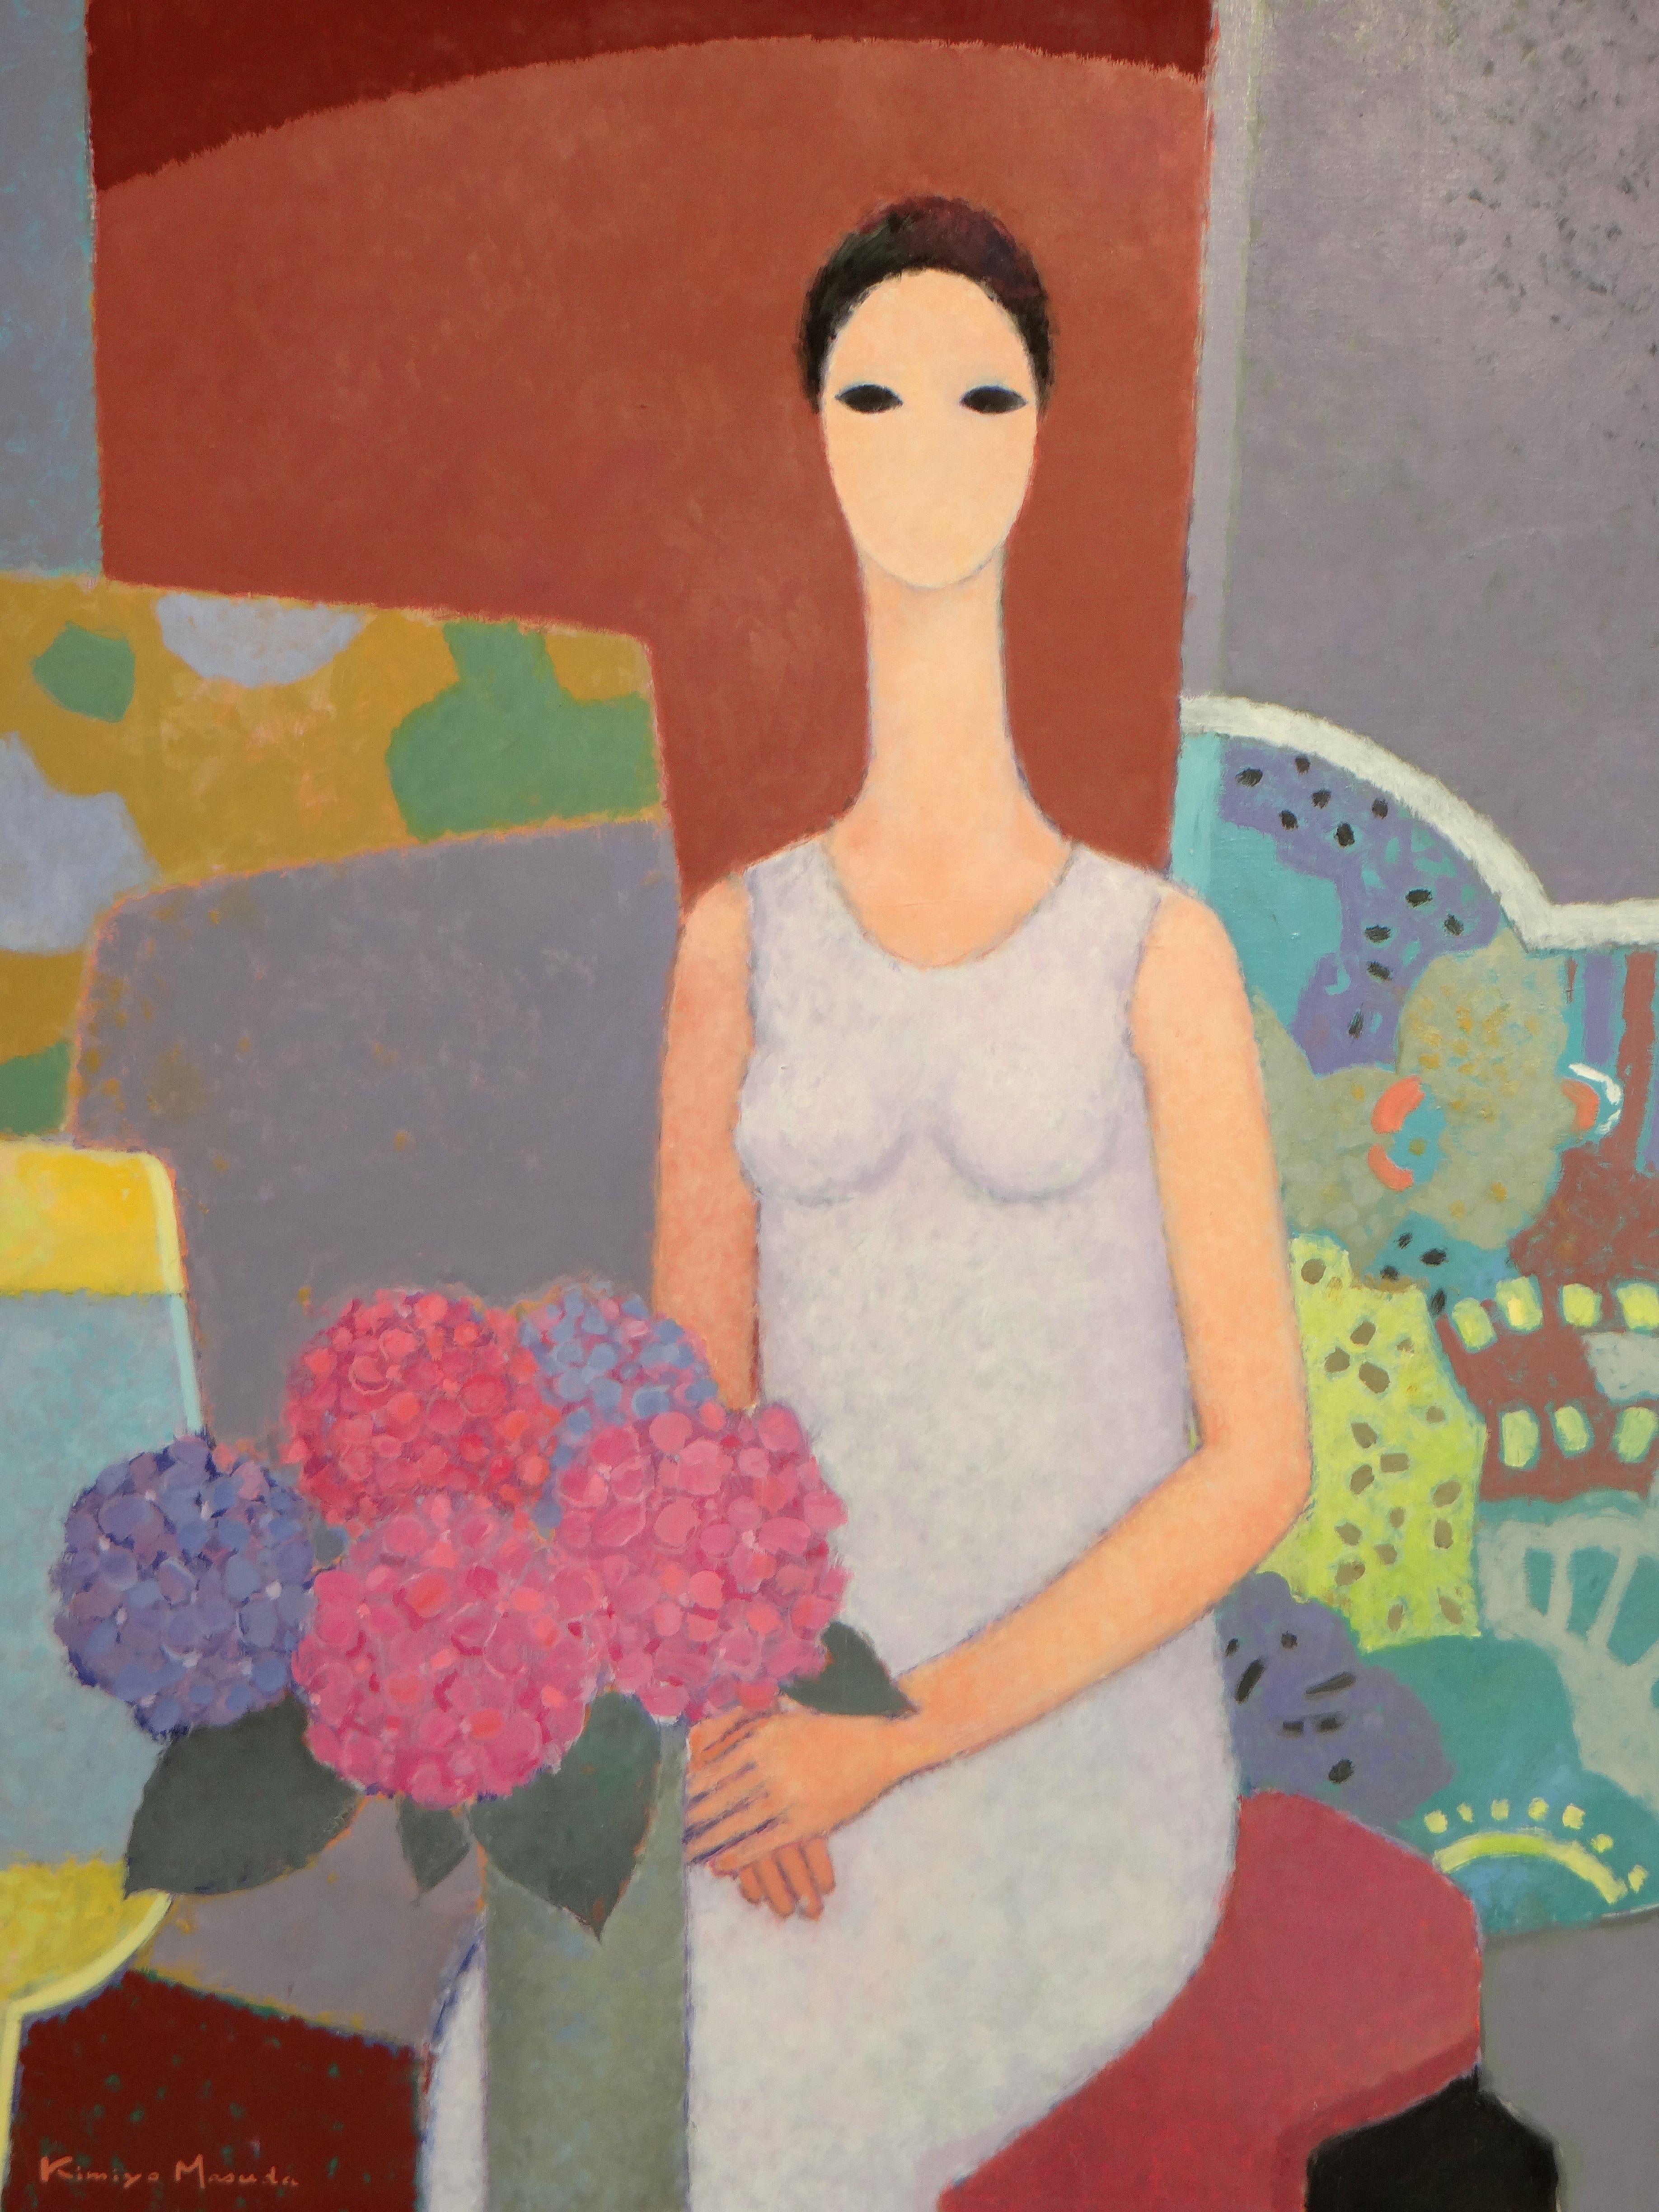 MASUDA (Kimiyo), peintre japonais né en 1943 à Kumamoto (Japon). Elle a étudié pendant cinq ans avec son professeur, le peintre Tashiro. Kimiyo MASUDA est arrivée en France en 1968 où elle a étudié à l'Ecole Nationale des Beaux-Arts de Paris pendant